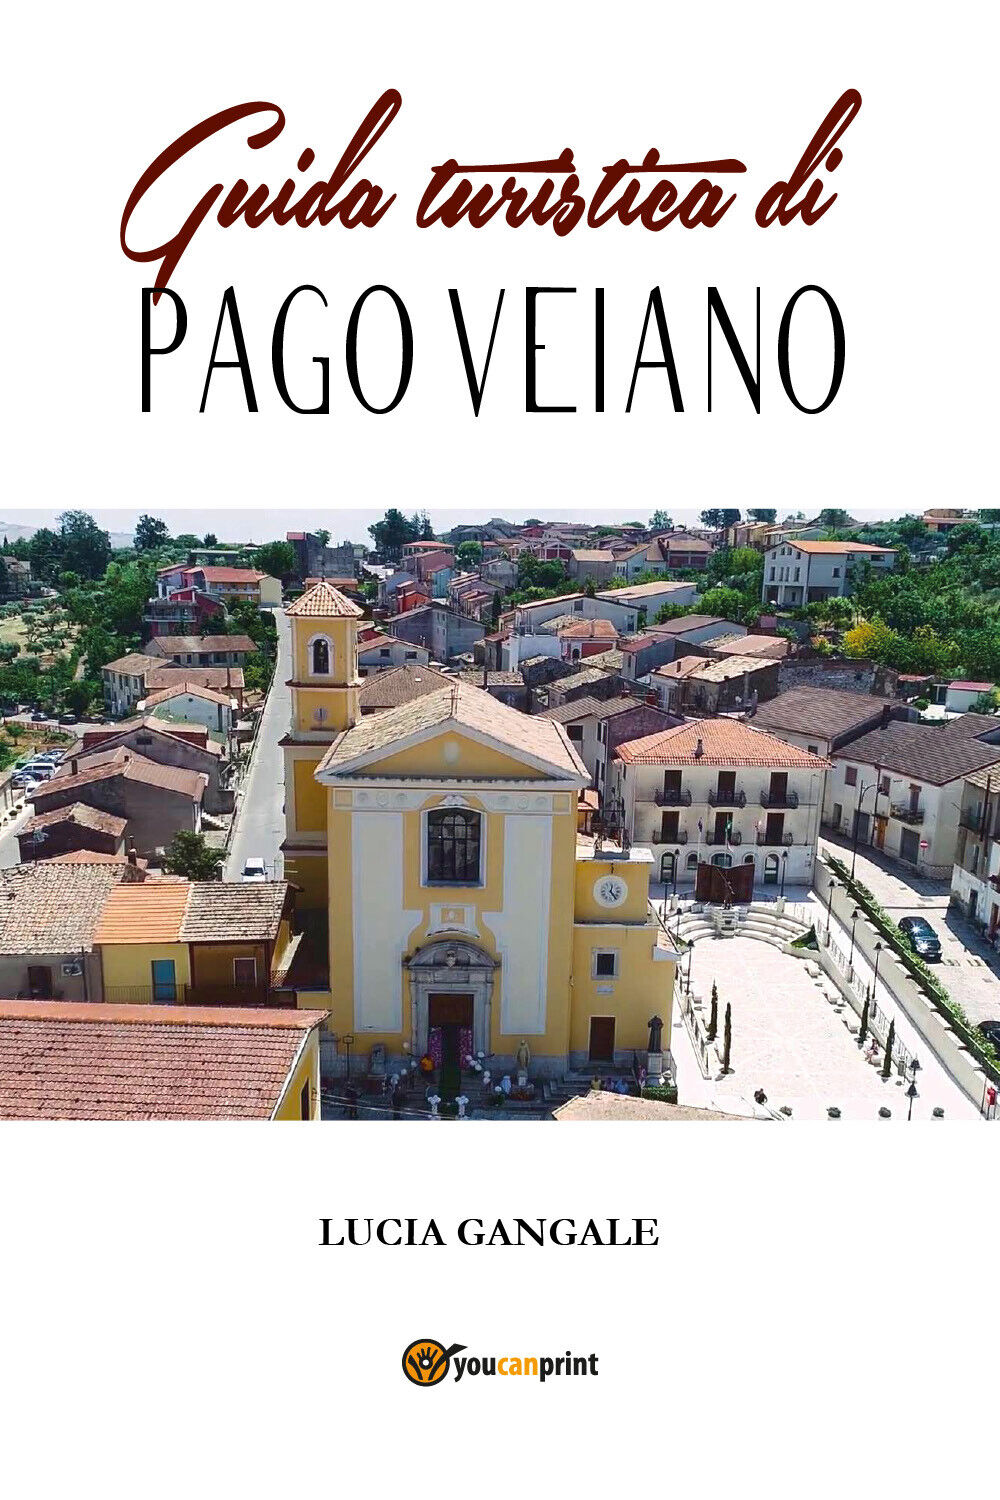 Guida turistica di Pago Veiano -Lucia Gangale,  2019,  Youcanprint - P libro usato